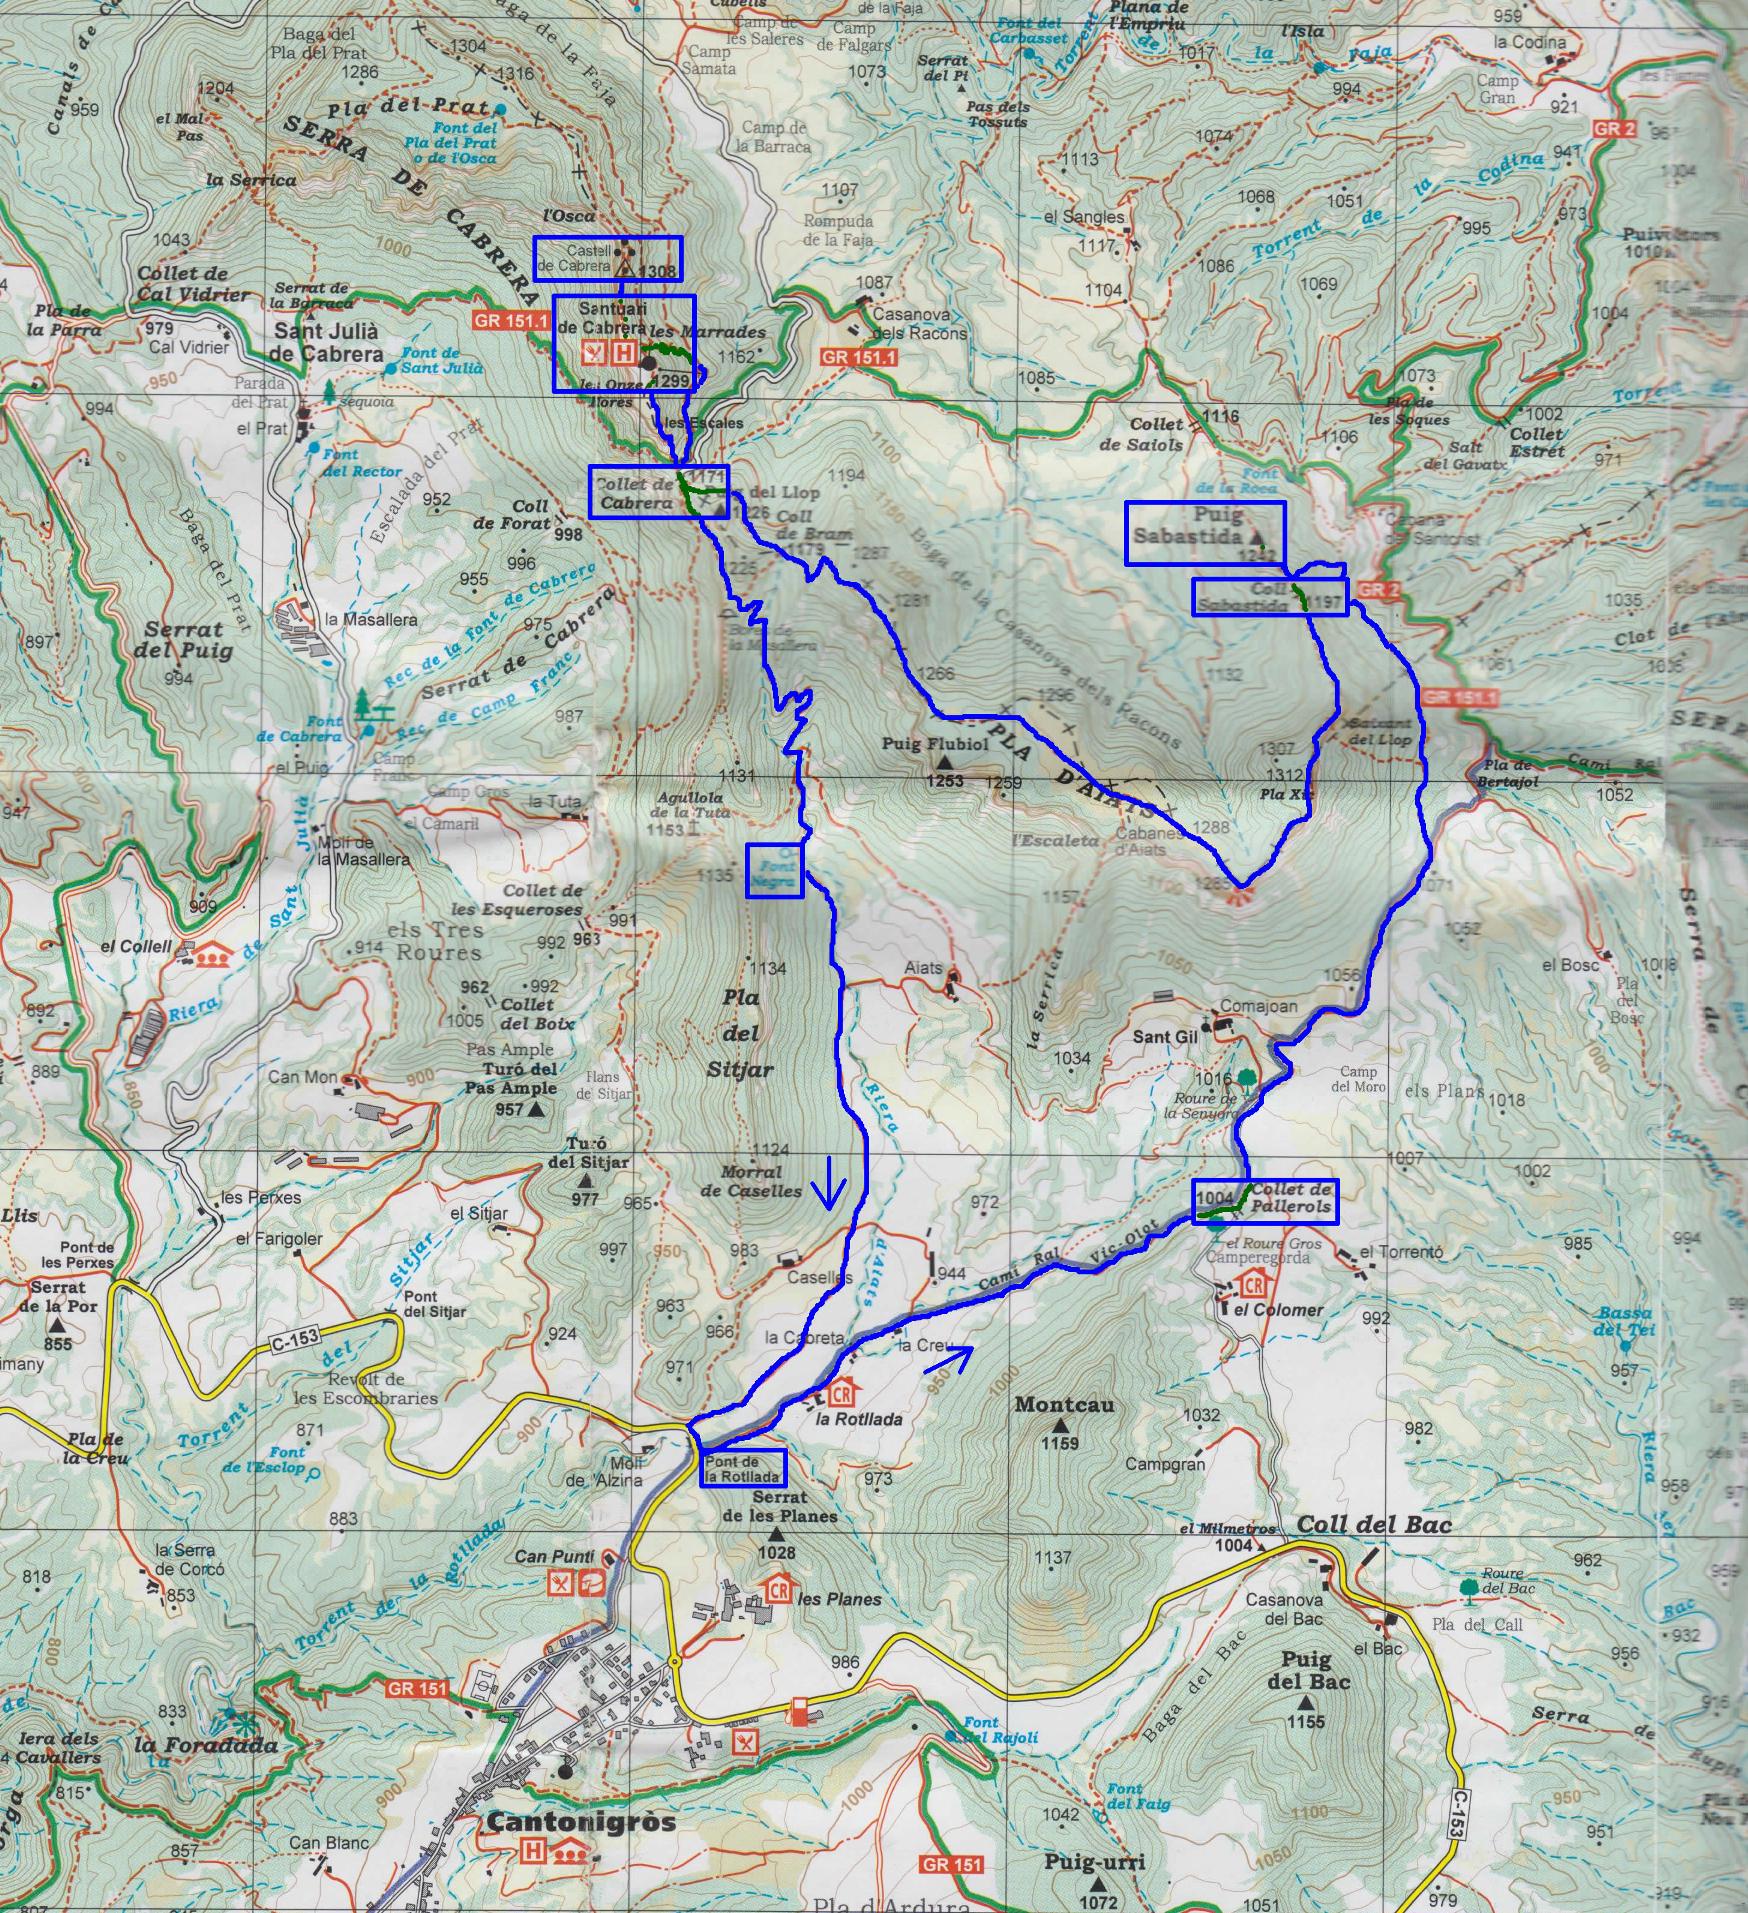 Mapa croquis del recorrido desde La Rotllada por el Camí Ral hacia el Puig Sabastida y Santuario de Cabrera por el Pla d'Aiats.